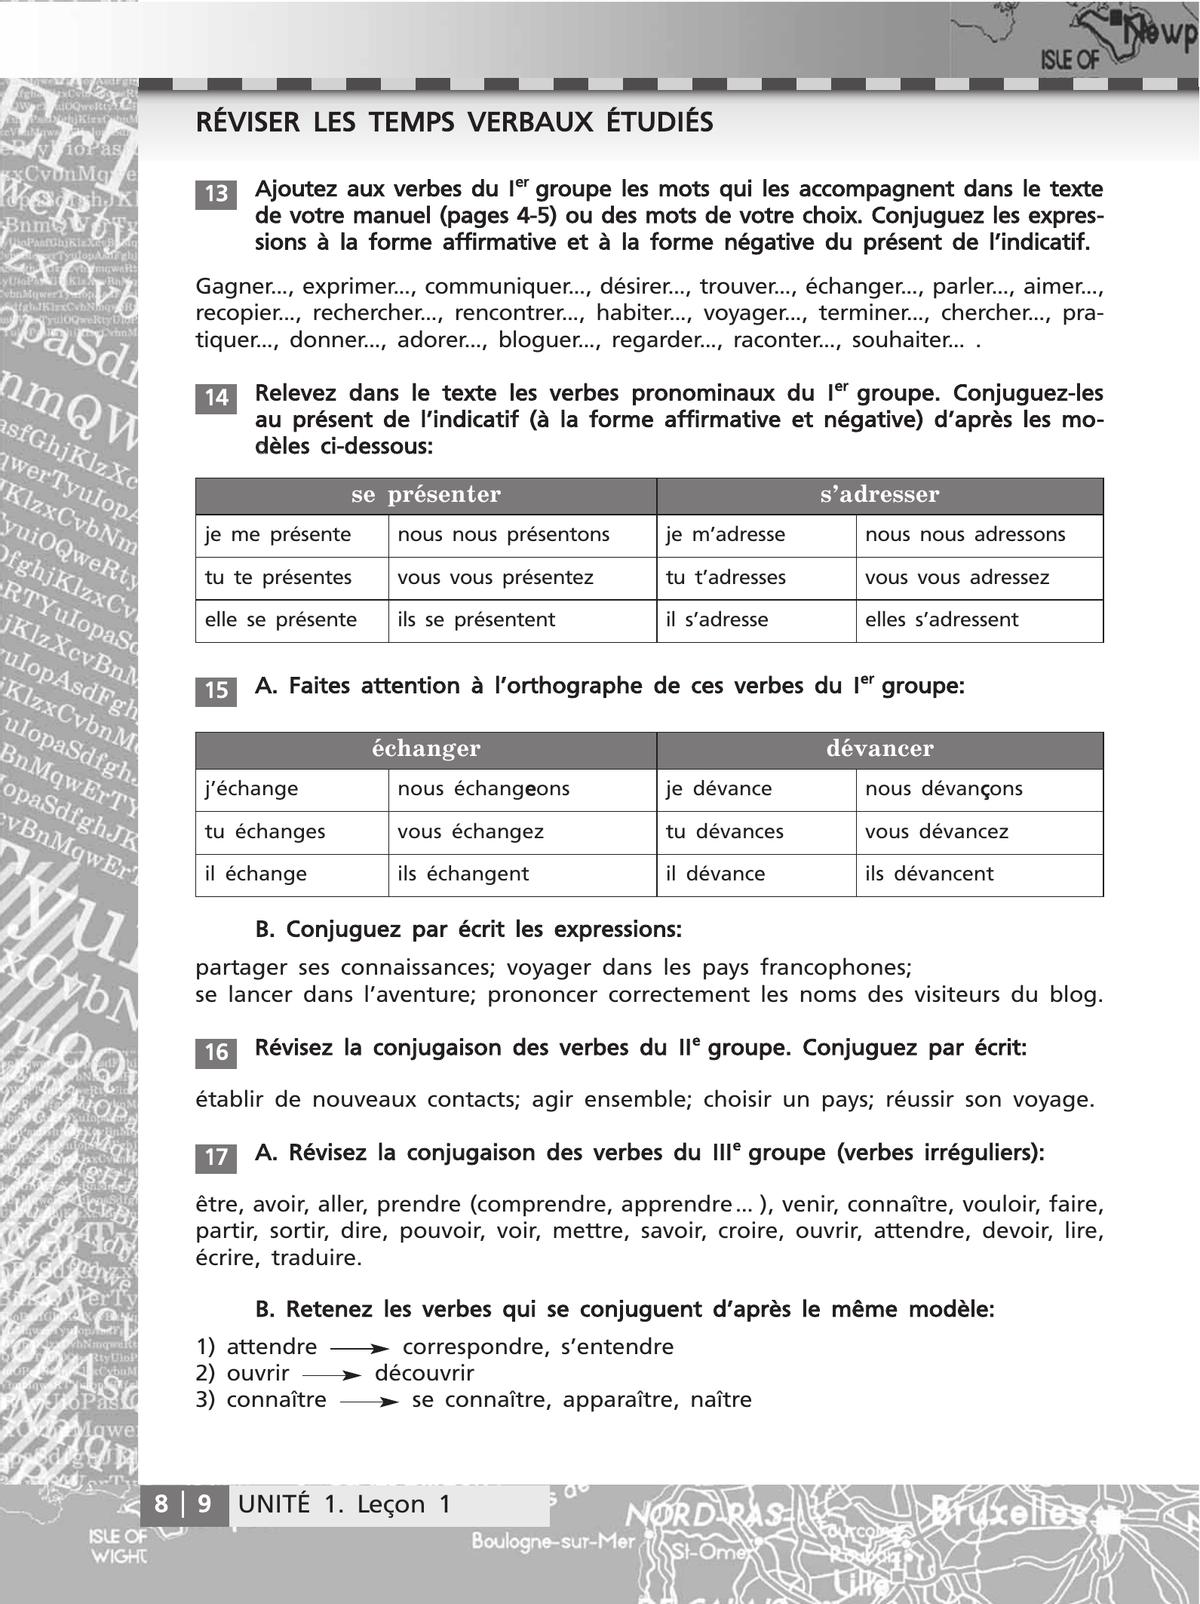 Французский язык. Второй иностранный язык. Сборник упражнений. 8-9 классы (второй и третий годы обучения) 10